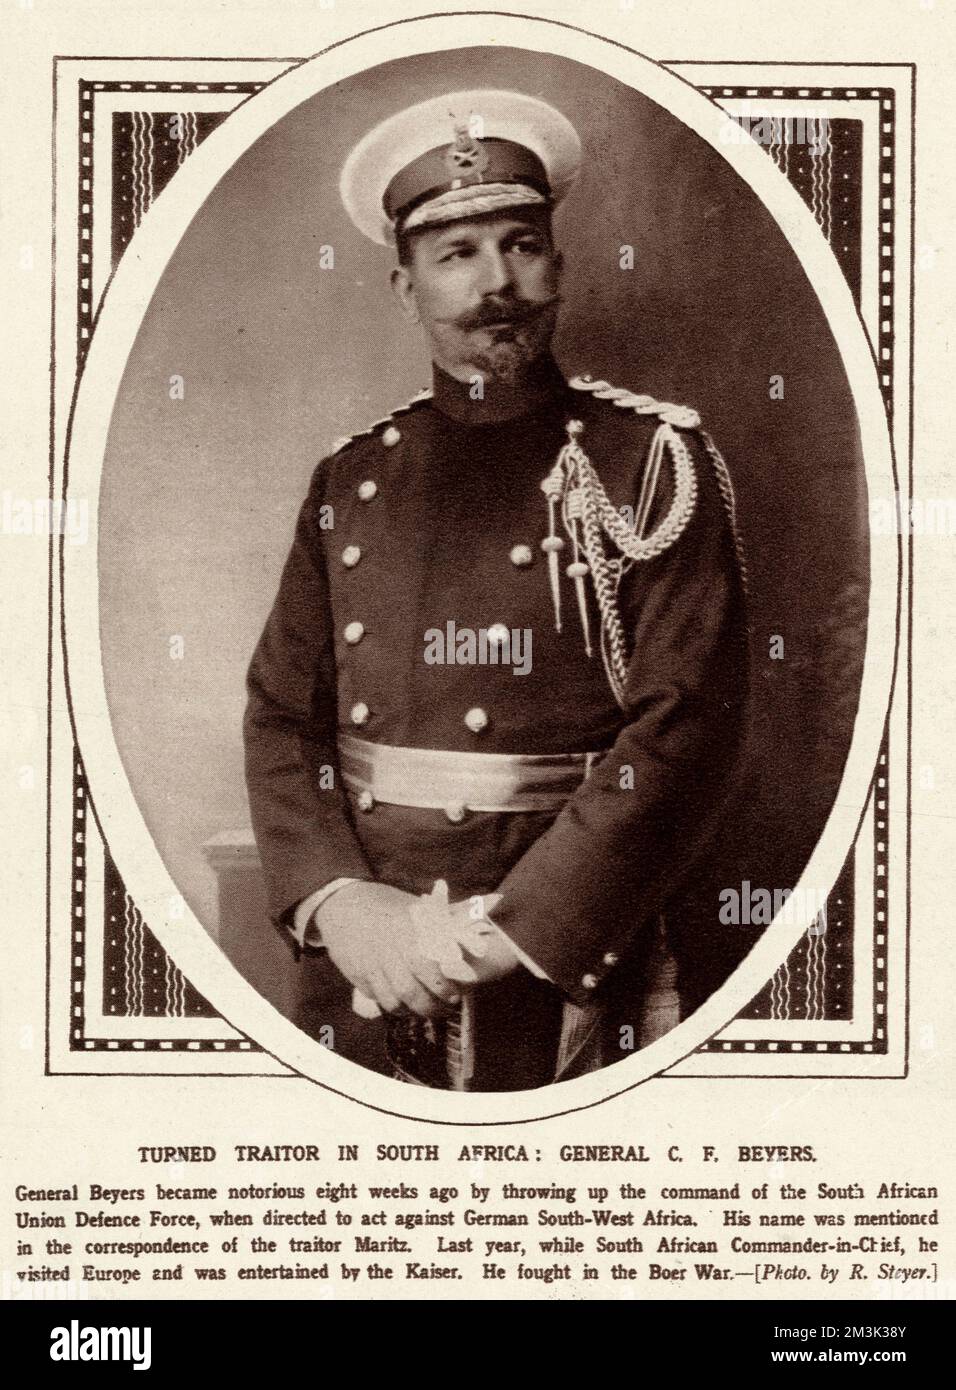 El General Beyers (1869 - 1914), se hizo notorio en las primeras etapas de la guerra por lanzar el mando de la Fuerza de Defensa de la Unión Sudafricana, al ordenar actuar contra el África Sudoccidental alemana. Fecha: 1914 Foto de stock